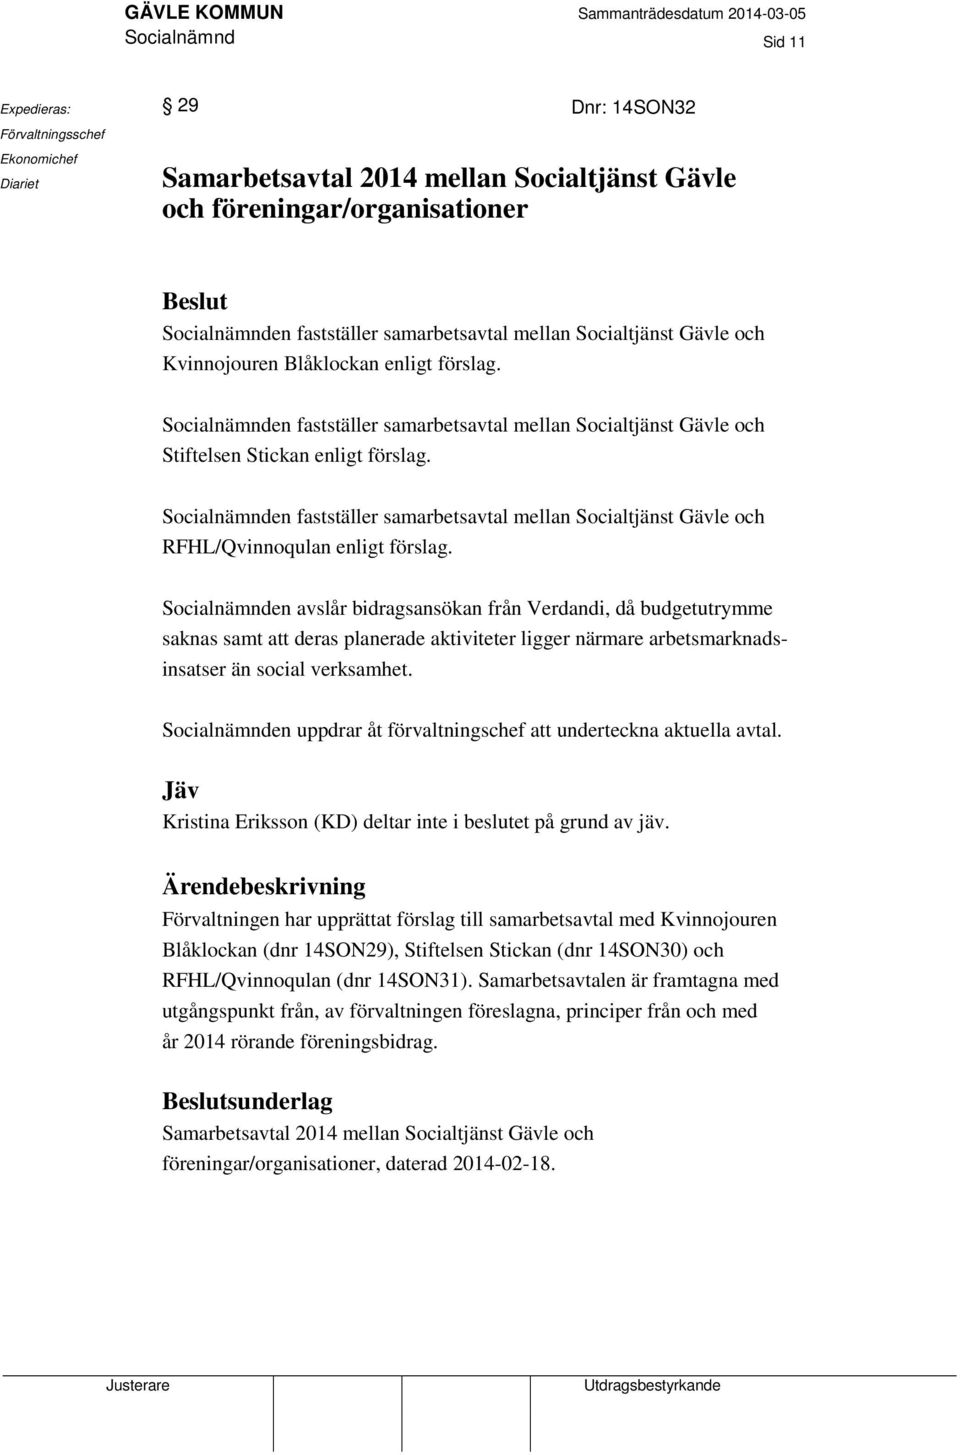 Socialnämnden fastställer samarbetsavtal mellan Socialtjänst Gävle och RFHL/Qvinnoqulan enligt förslag.